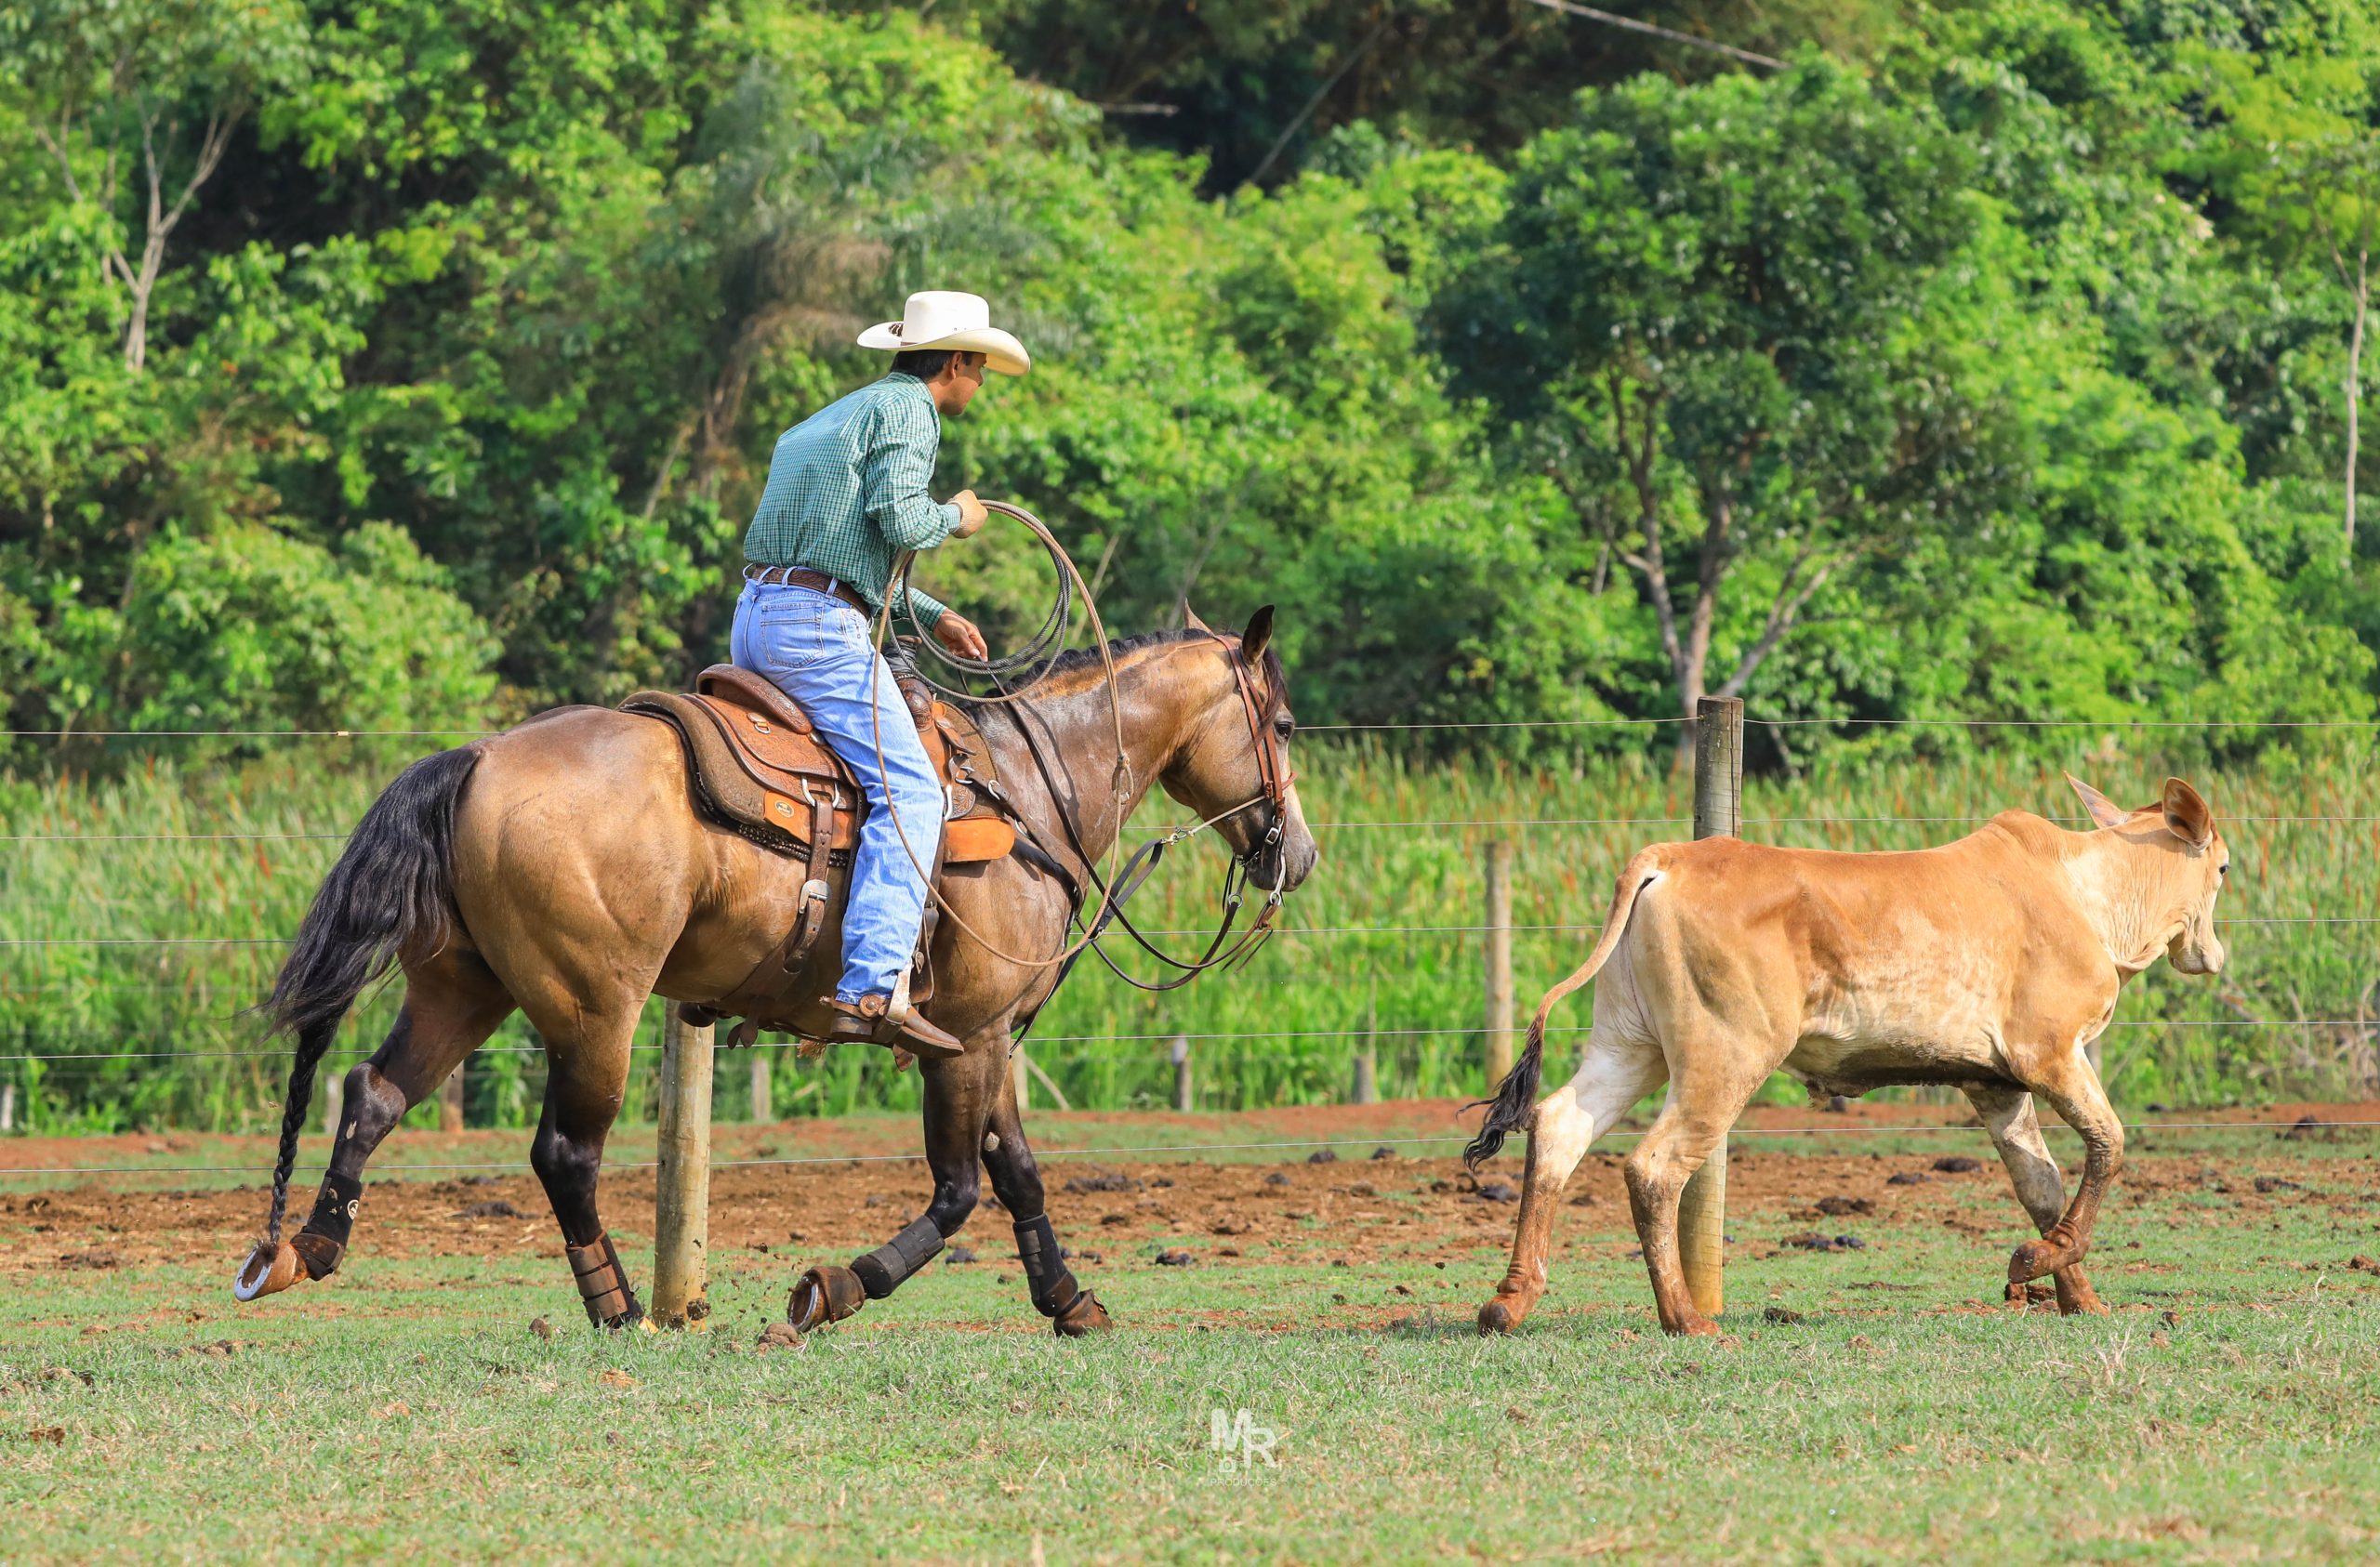 Marcos Oliveira e a sua história no meio do cavalo e no treinamento de Laço - Parte 1